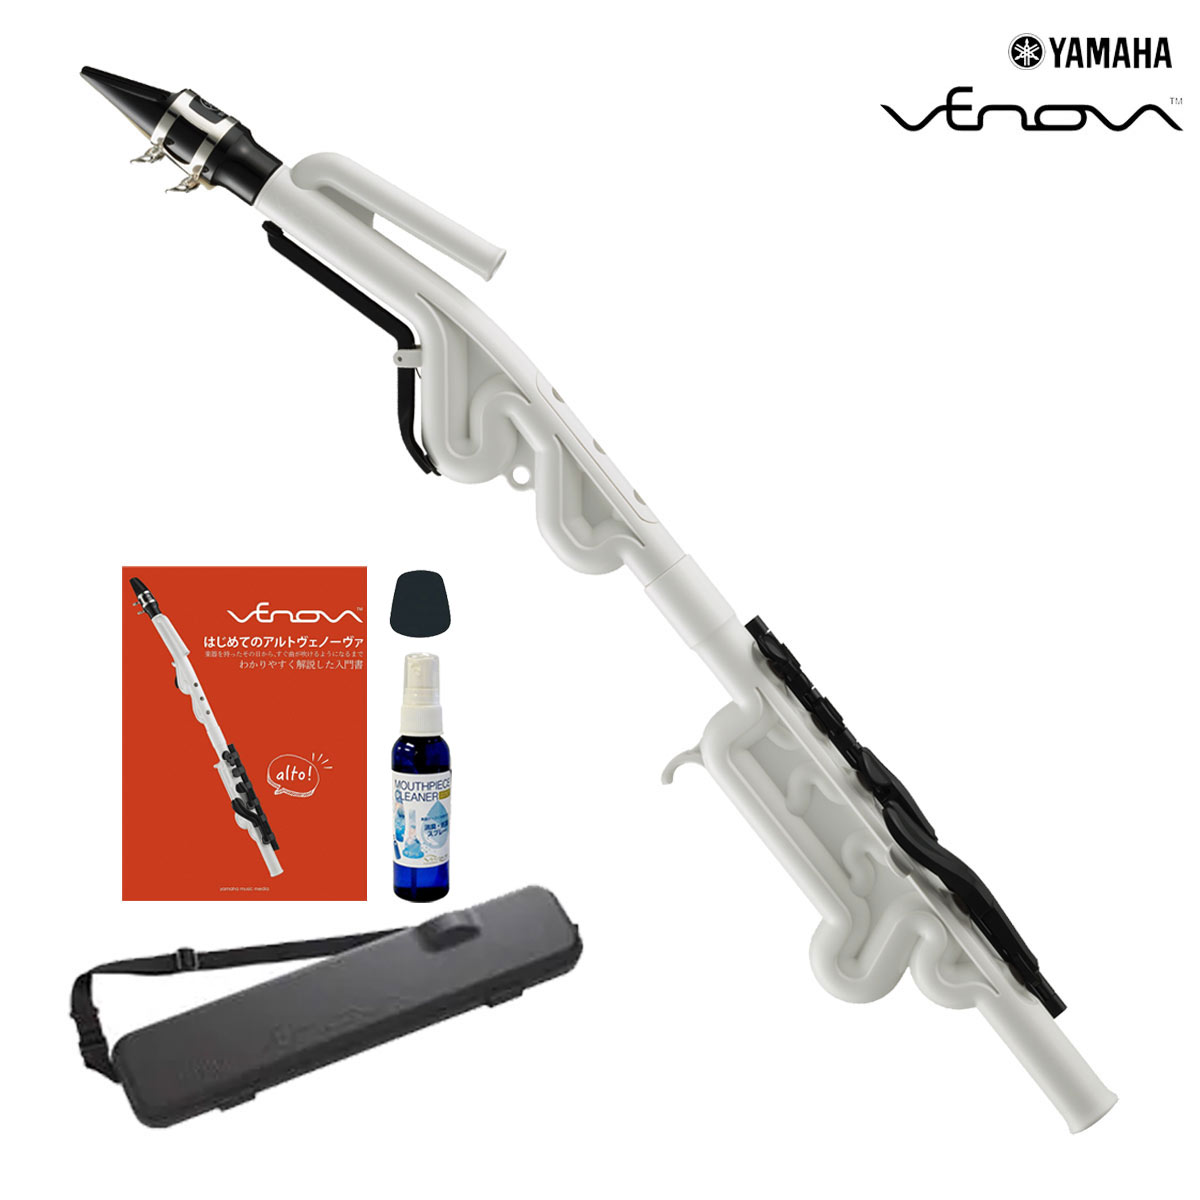 【あす楽対象商品】YAMAHA / YVS-120 Alto Venova アルト ヴェノーヴァ カジュアル管楽器 《オリジナルセット》《専用ケース付き》【YRK】